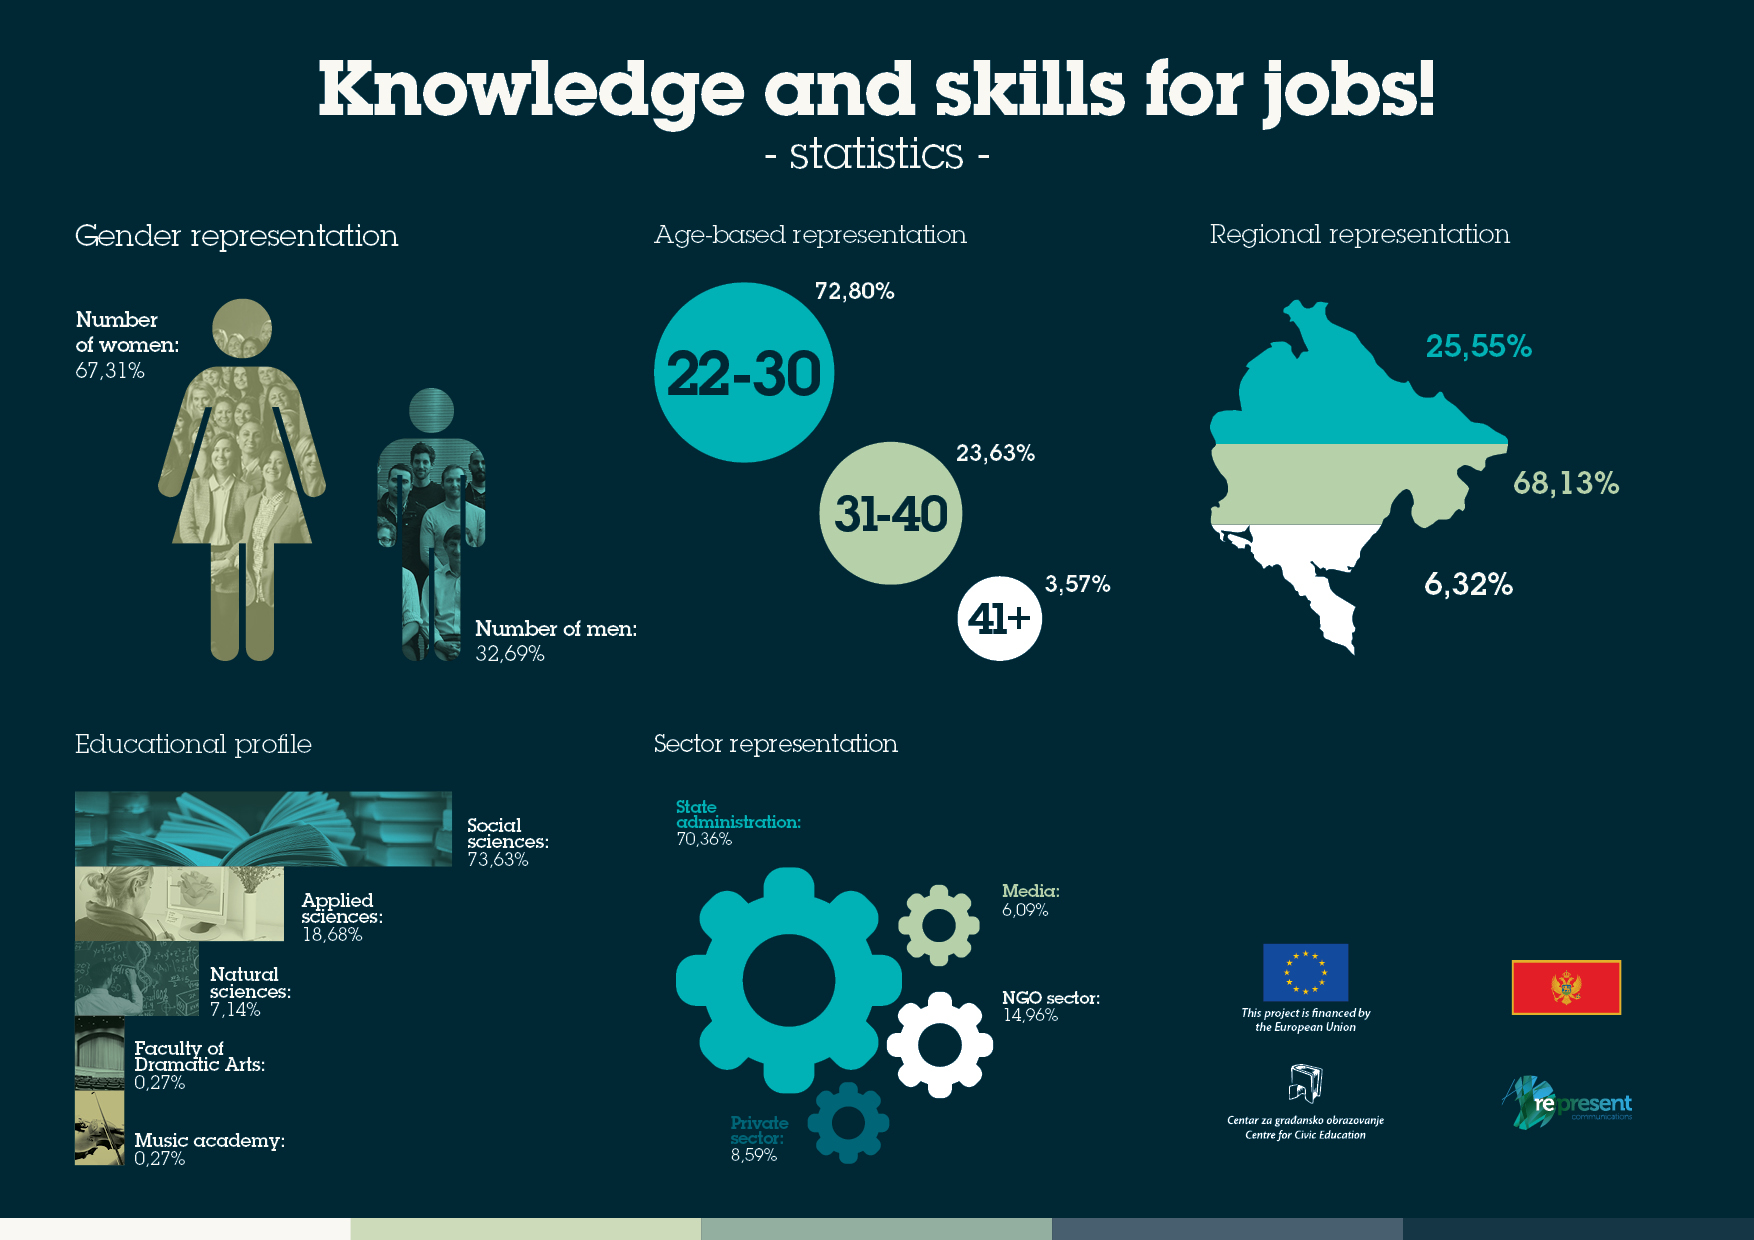 cgo-cce-znanje i vjestine za posao-infografik-ENG